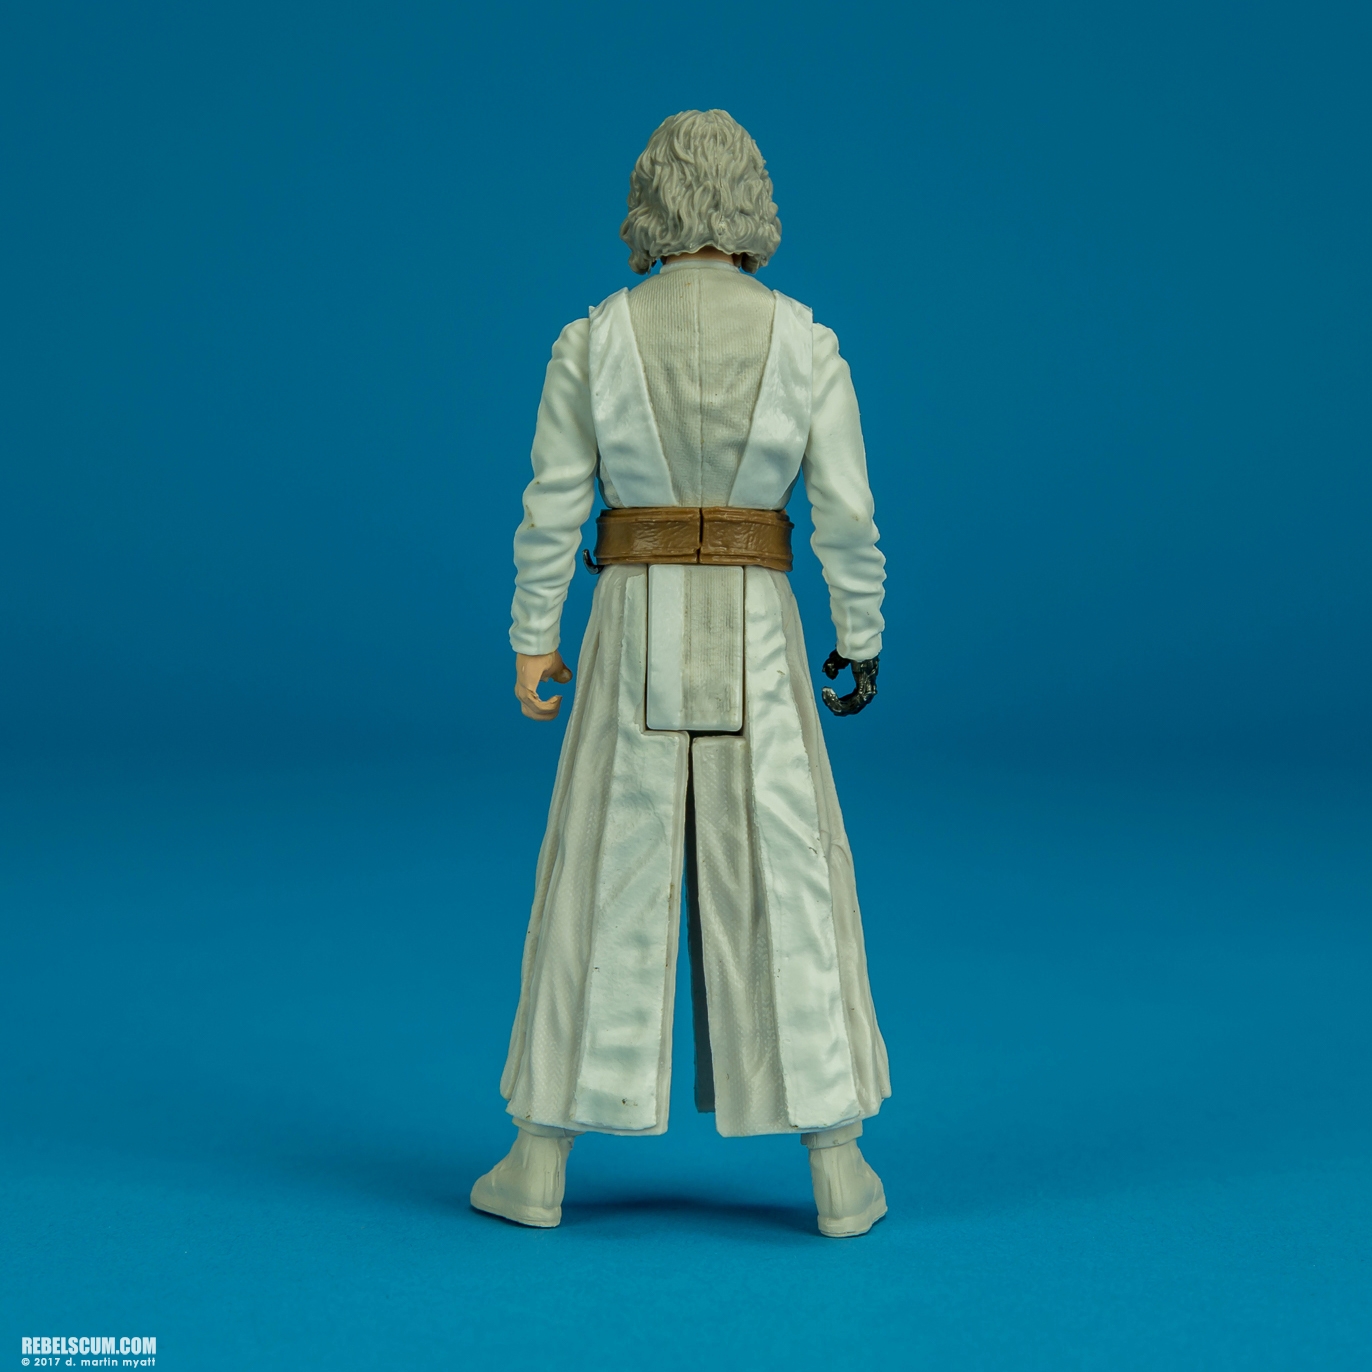 The-Last-Jedi-Star-Wars-Universe-Luke-Skywalker-Hasbro-008.jpg